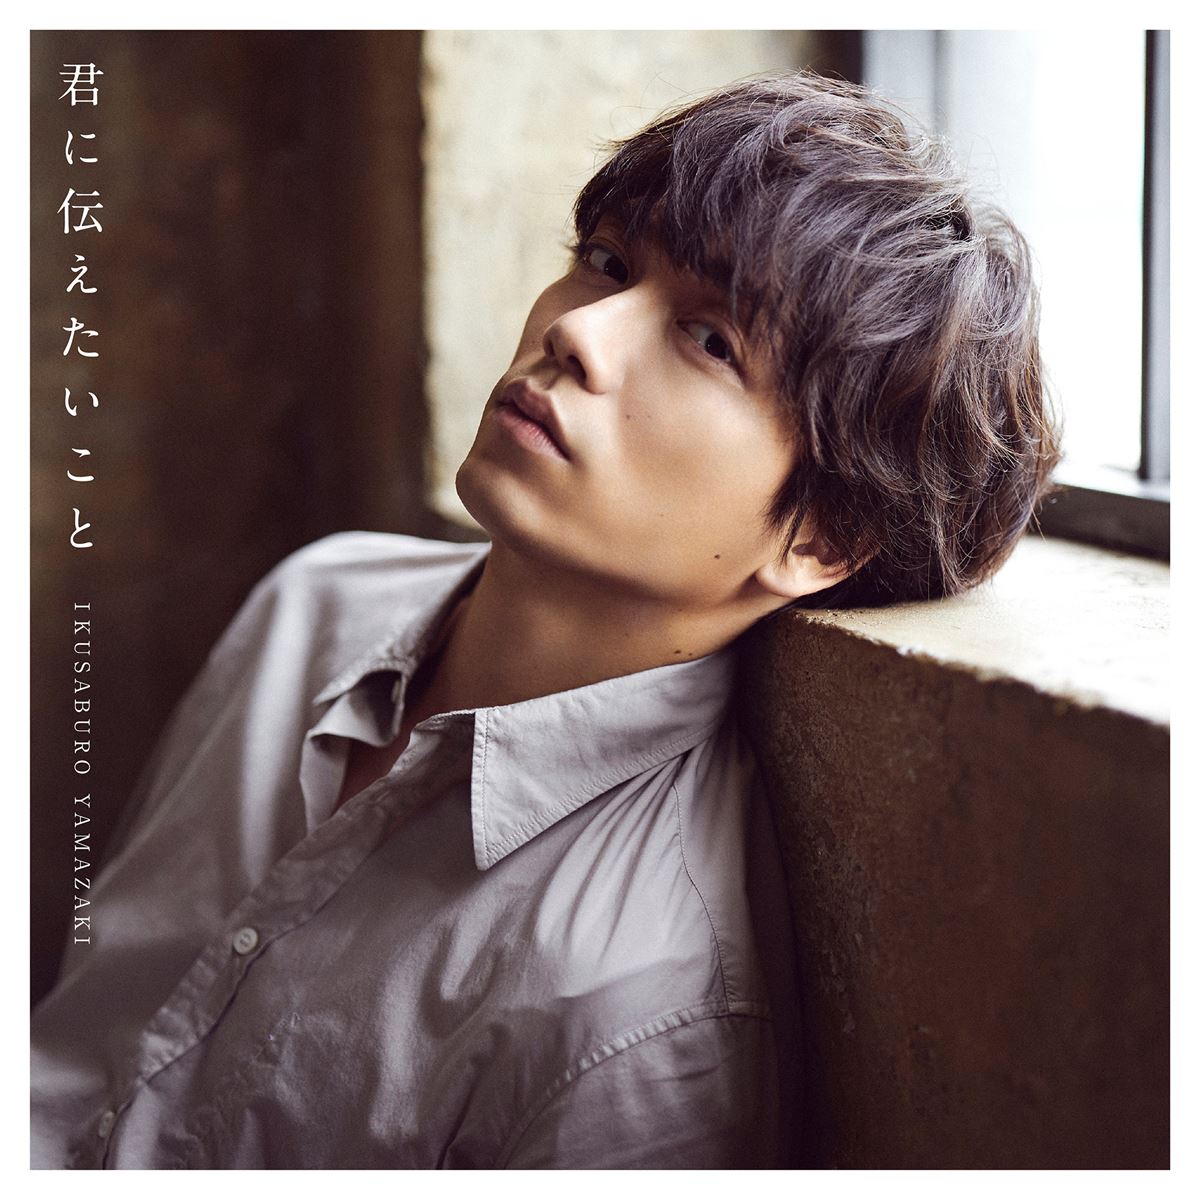 山崎育三郎 New Single『君に伝えたいこと』初回盤